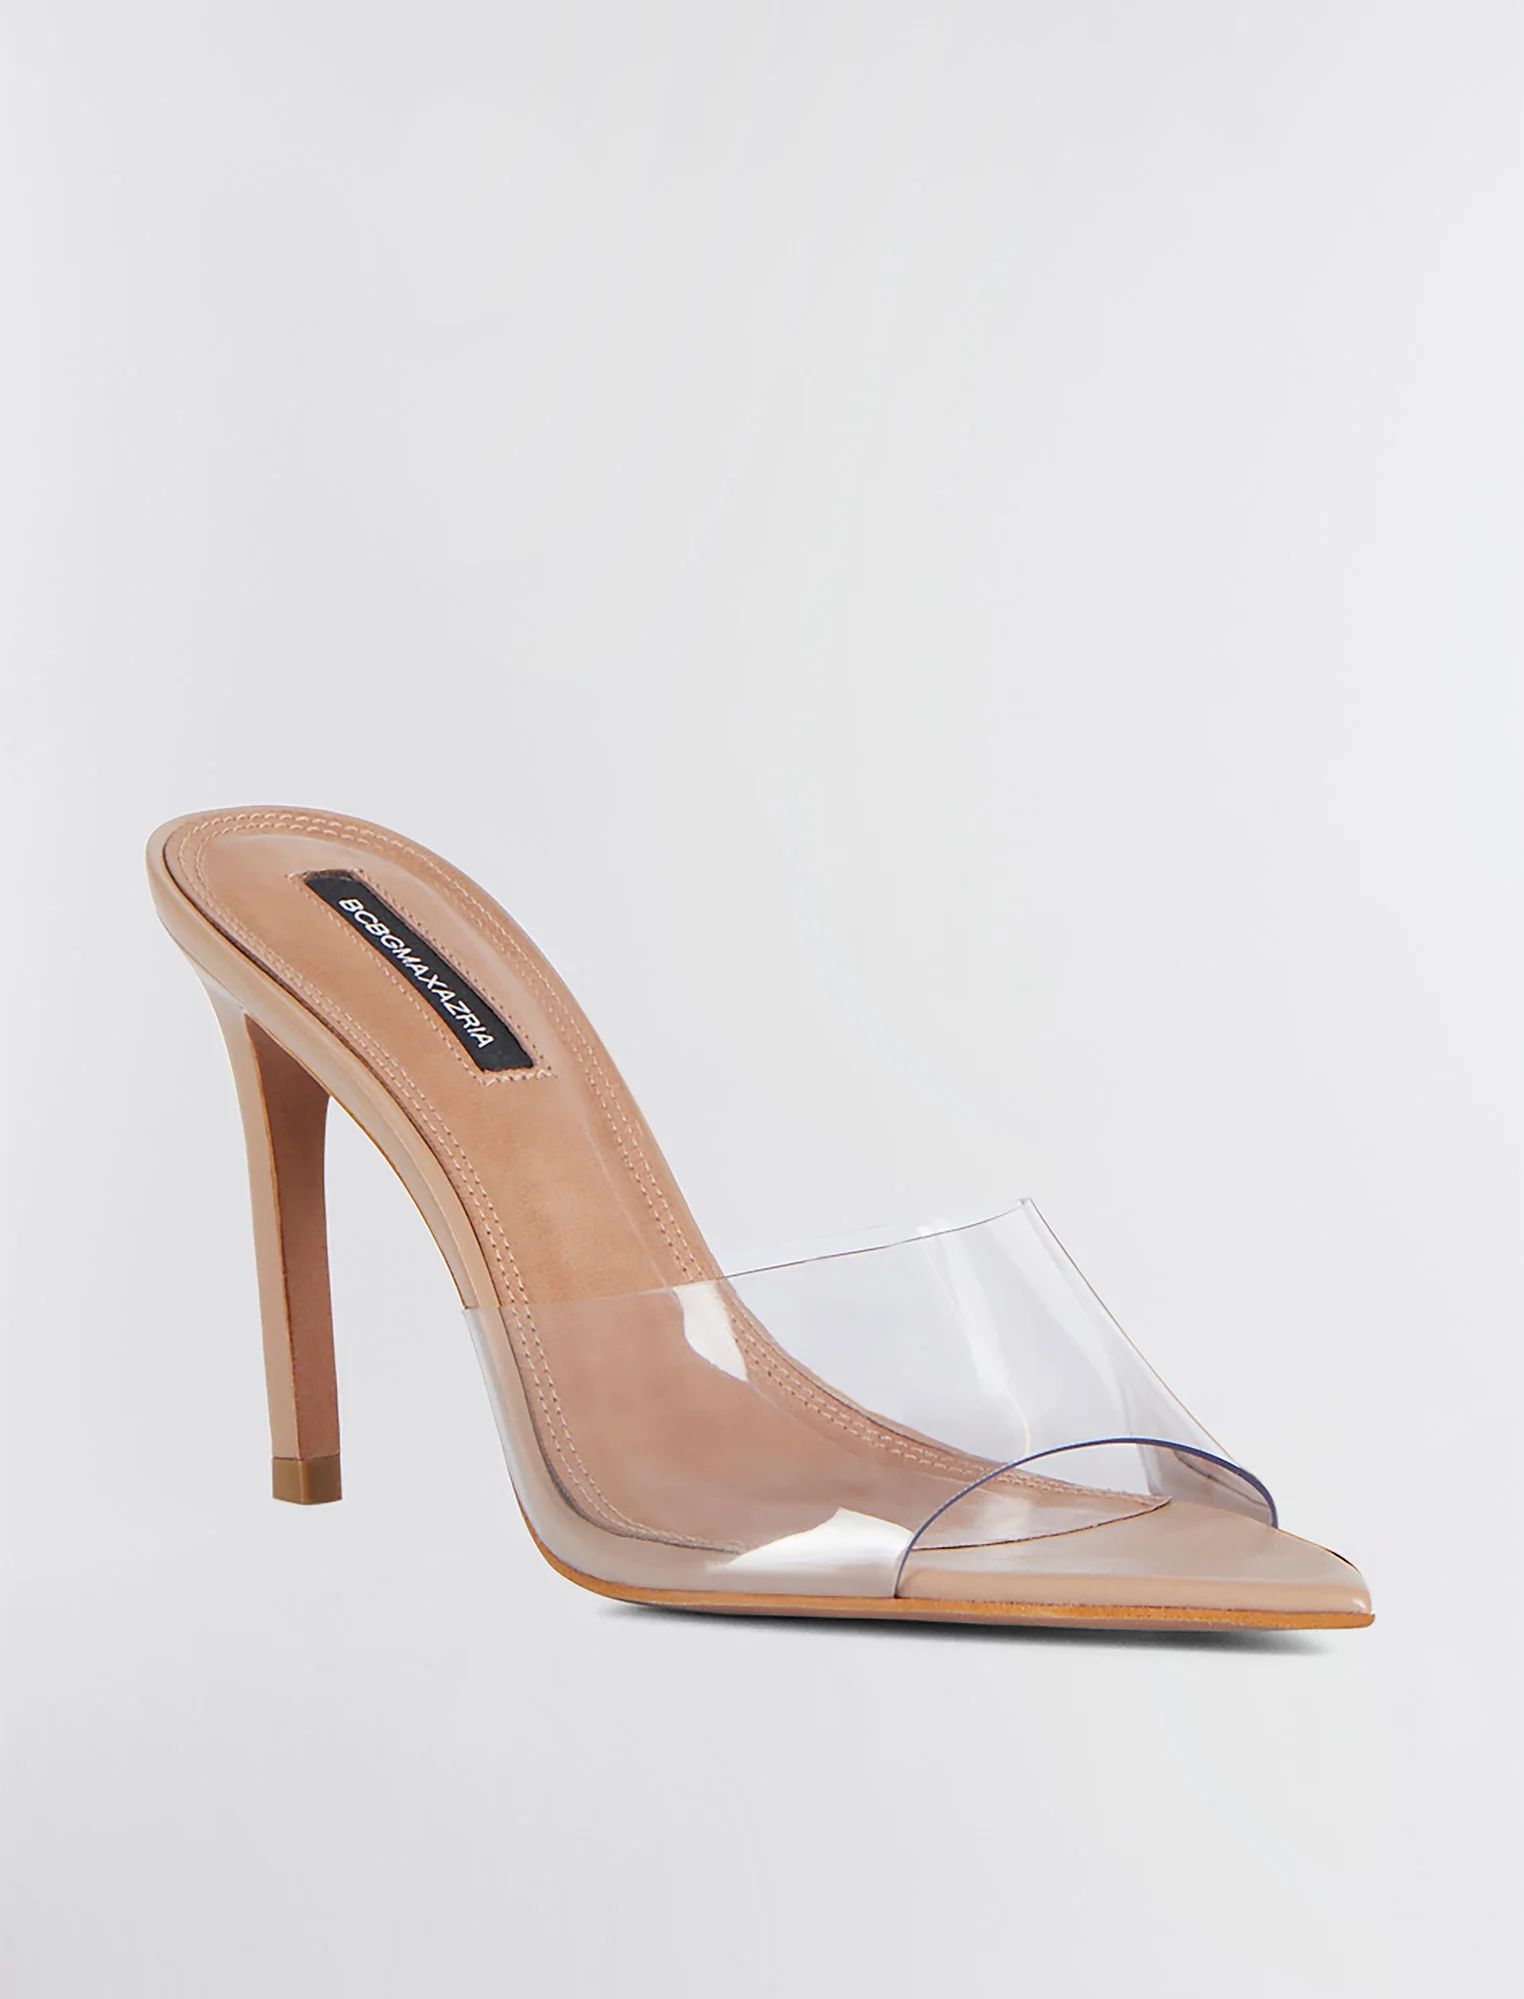 Tan/Clear Dana Sandal Heel | Shoes | BCBGMAXAZRIA | BCBG Max Azria 